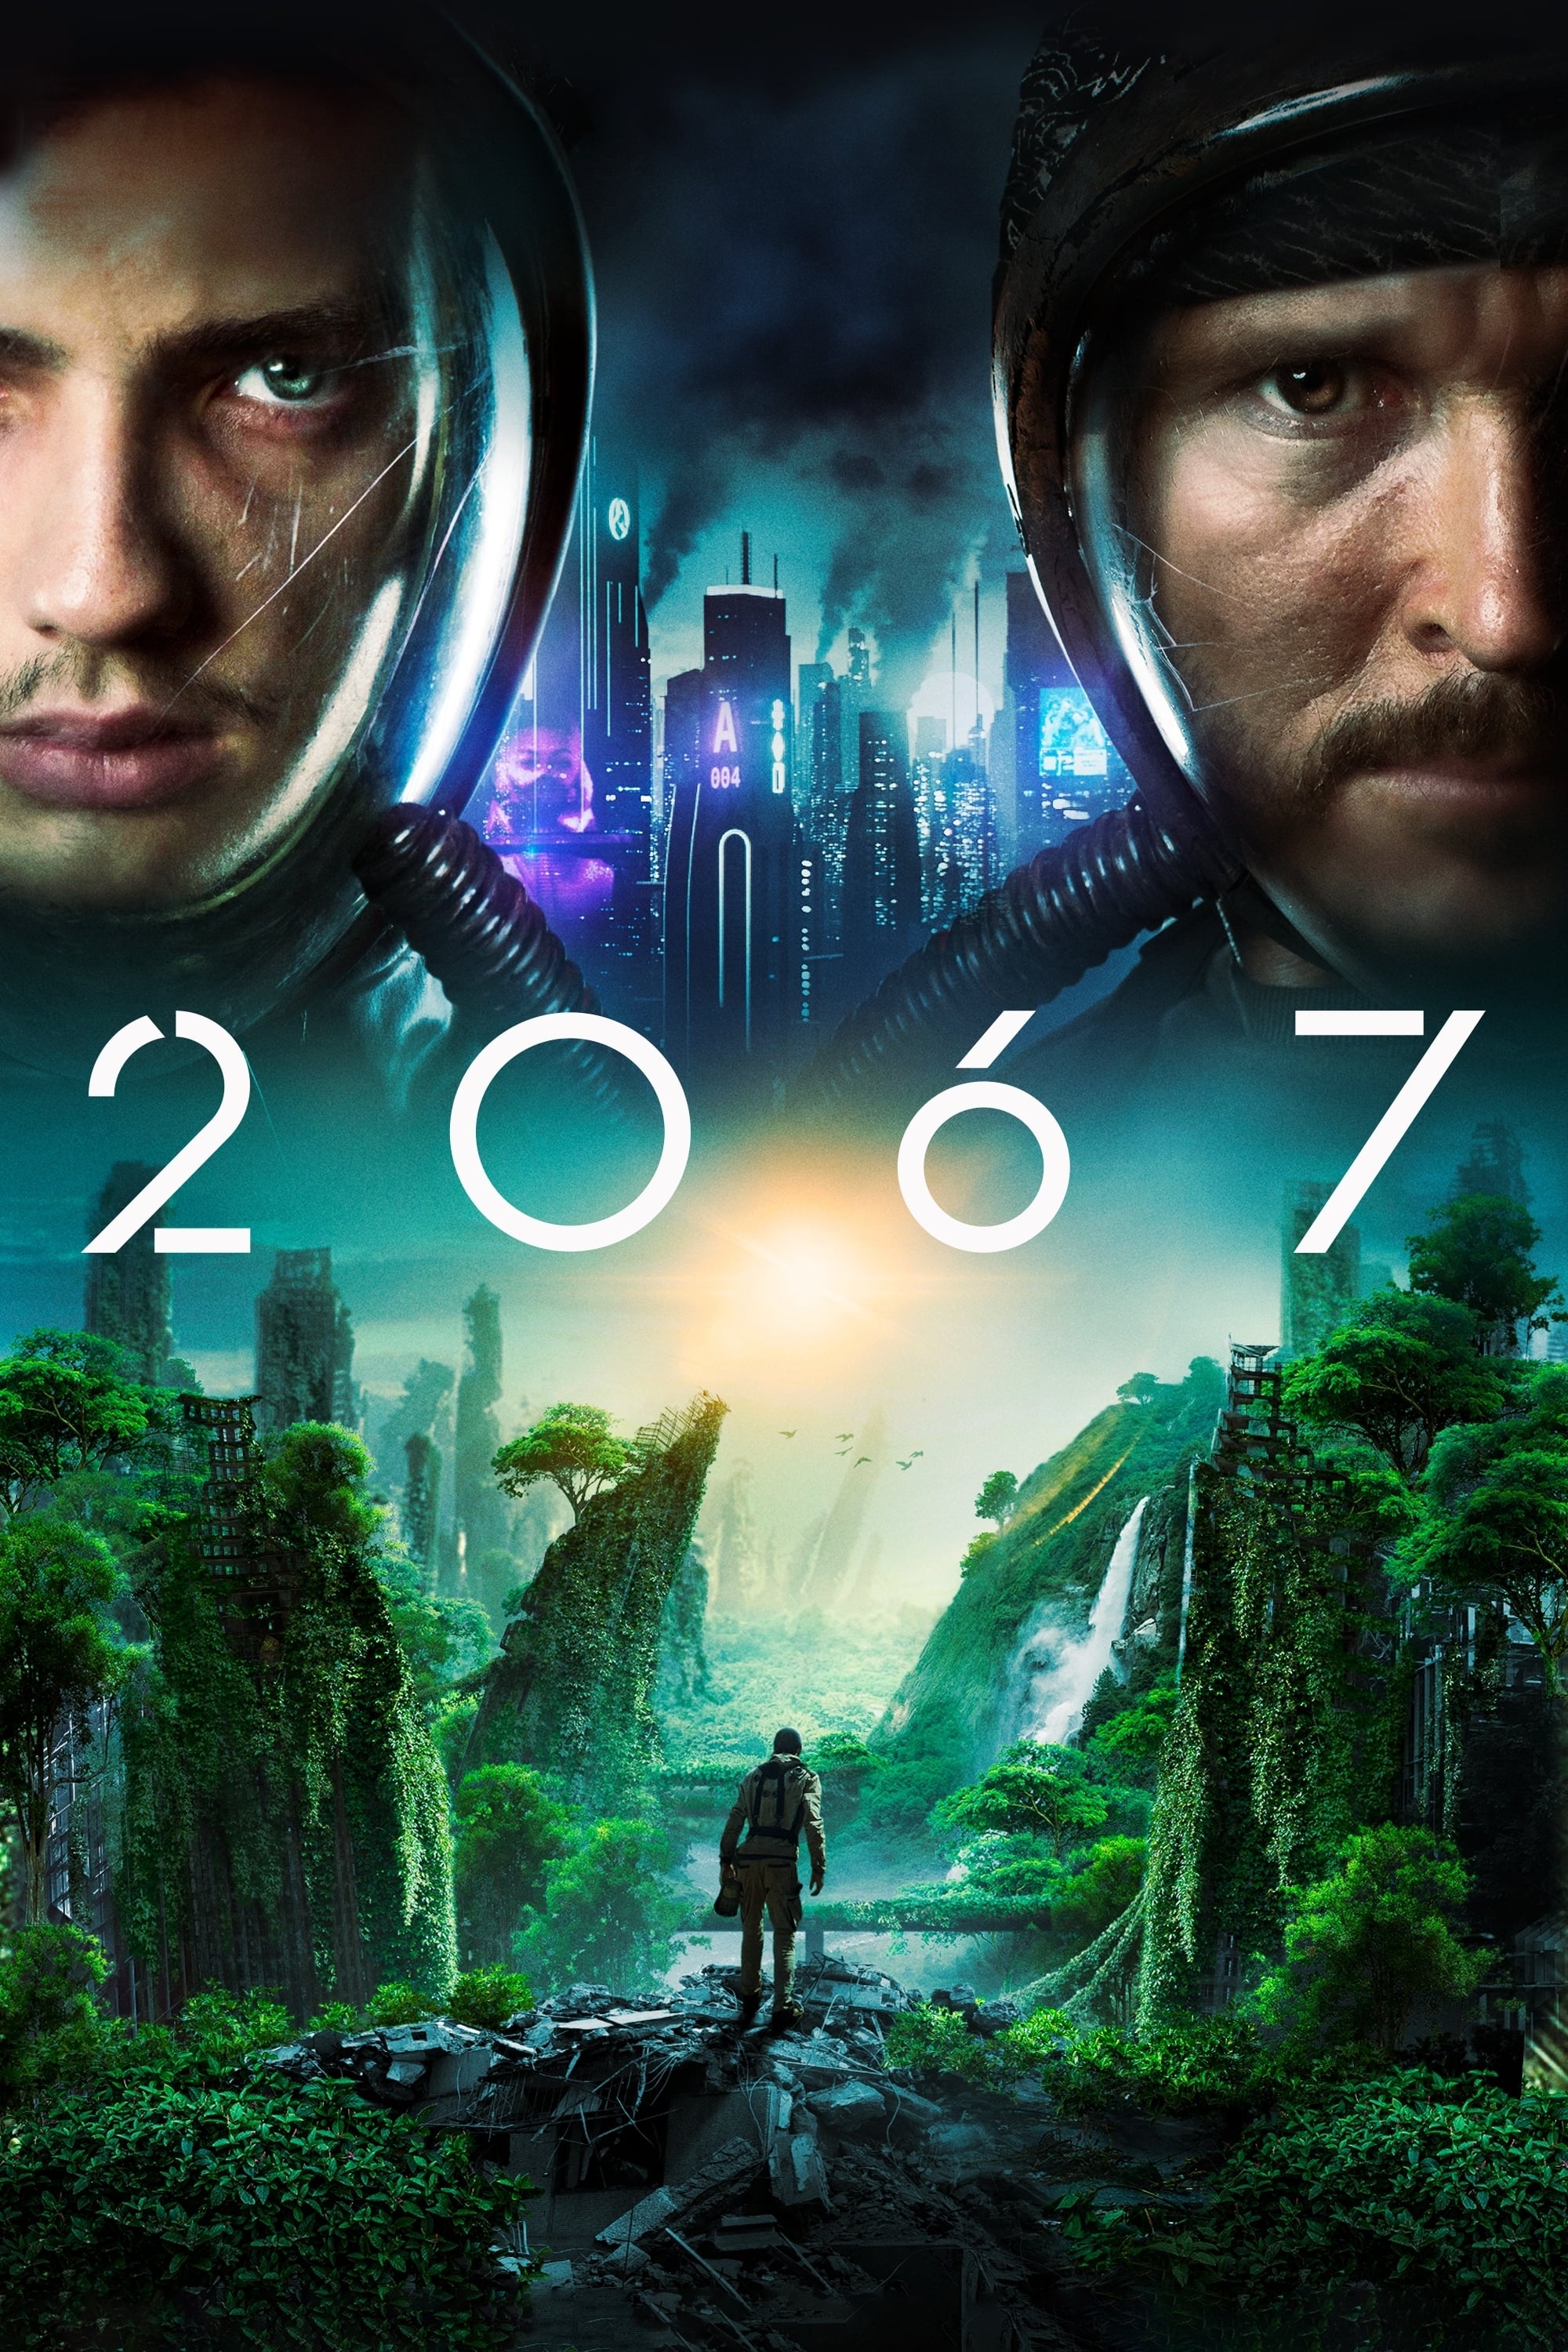 2067 - Kampf um die Zukunft